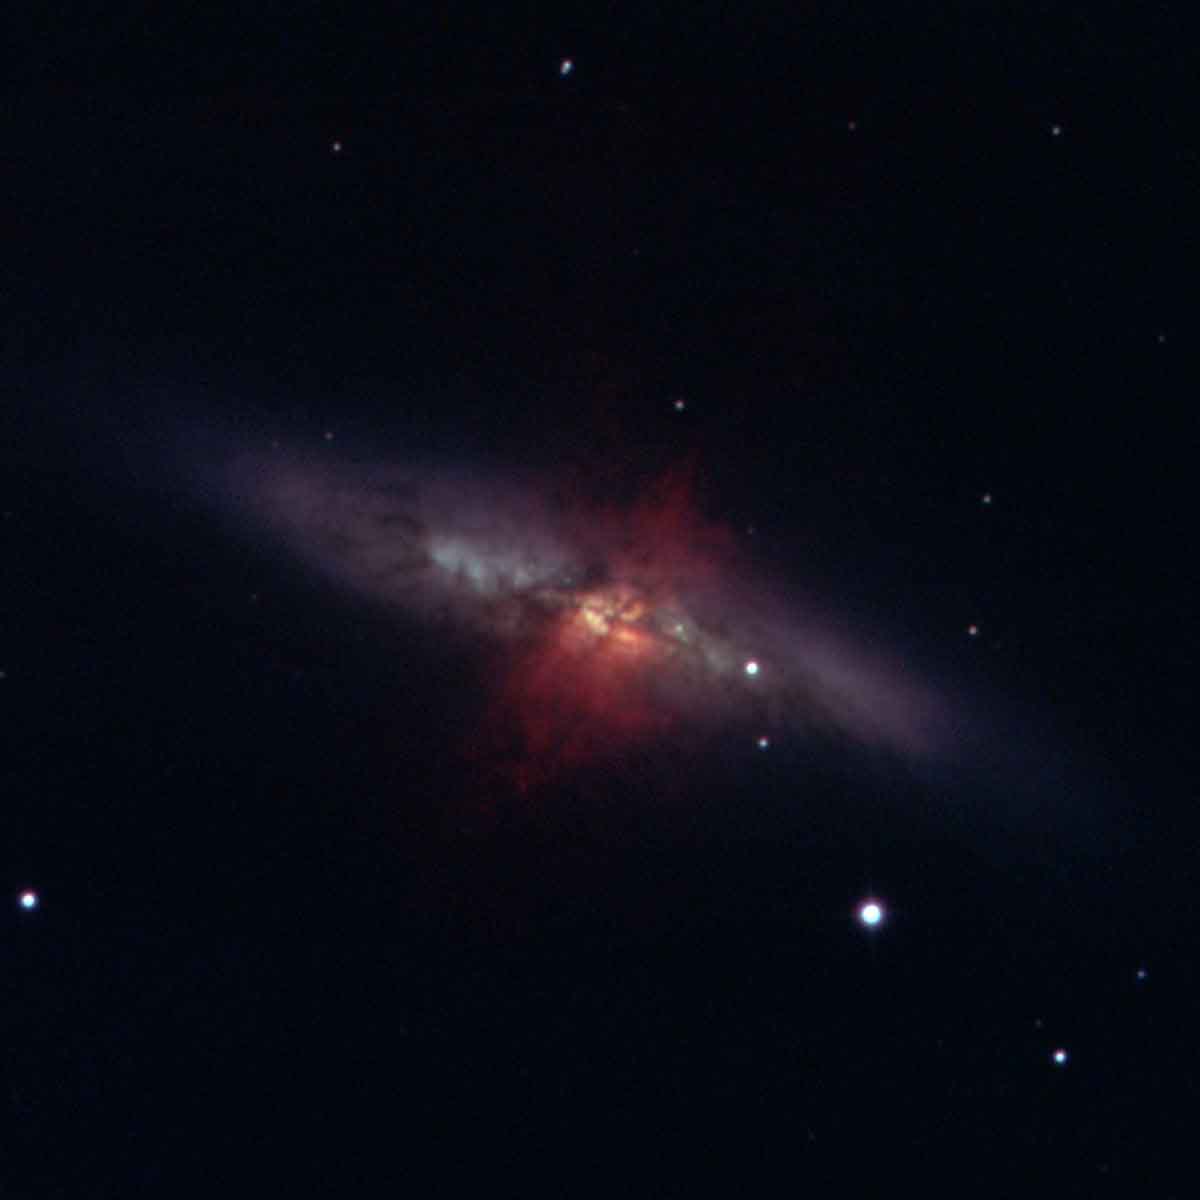 M82 - Cigar Galaxy with SN2014J